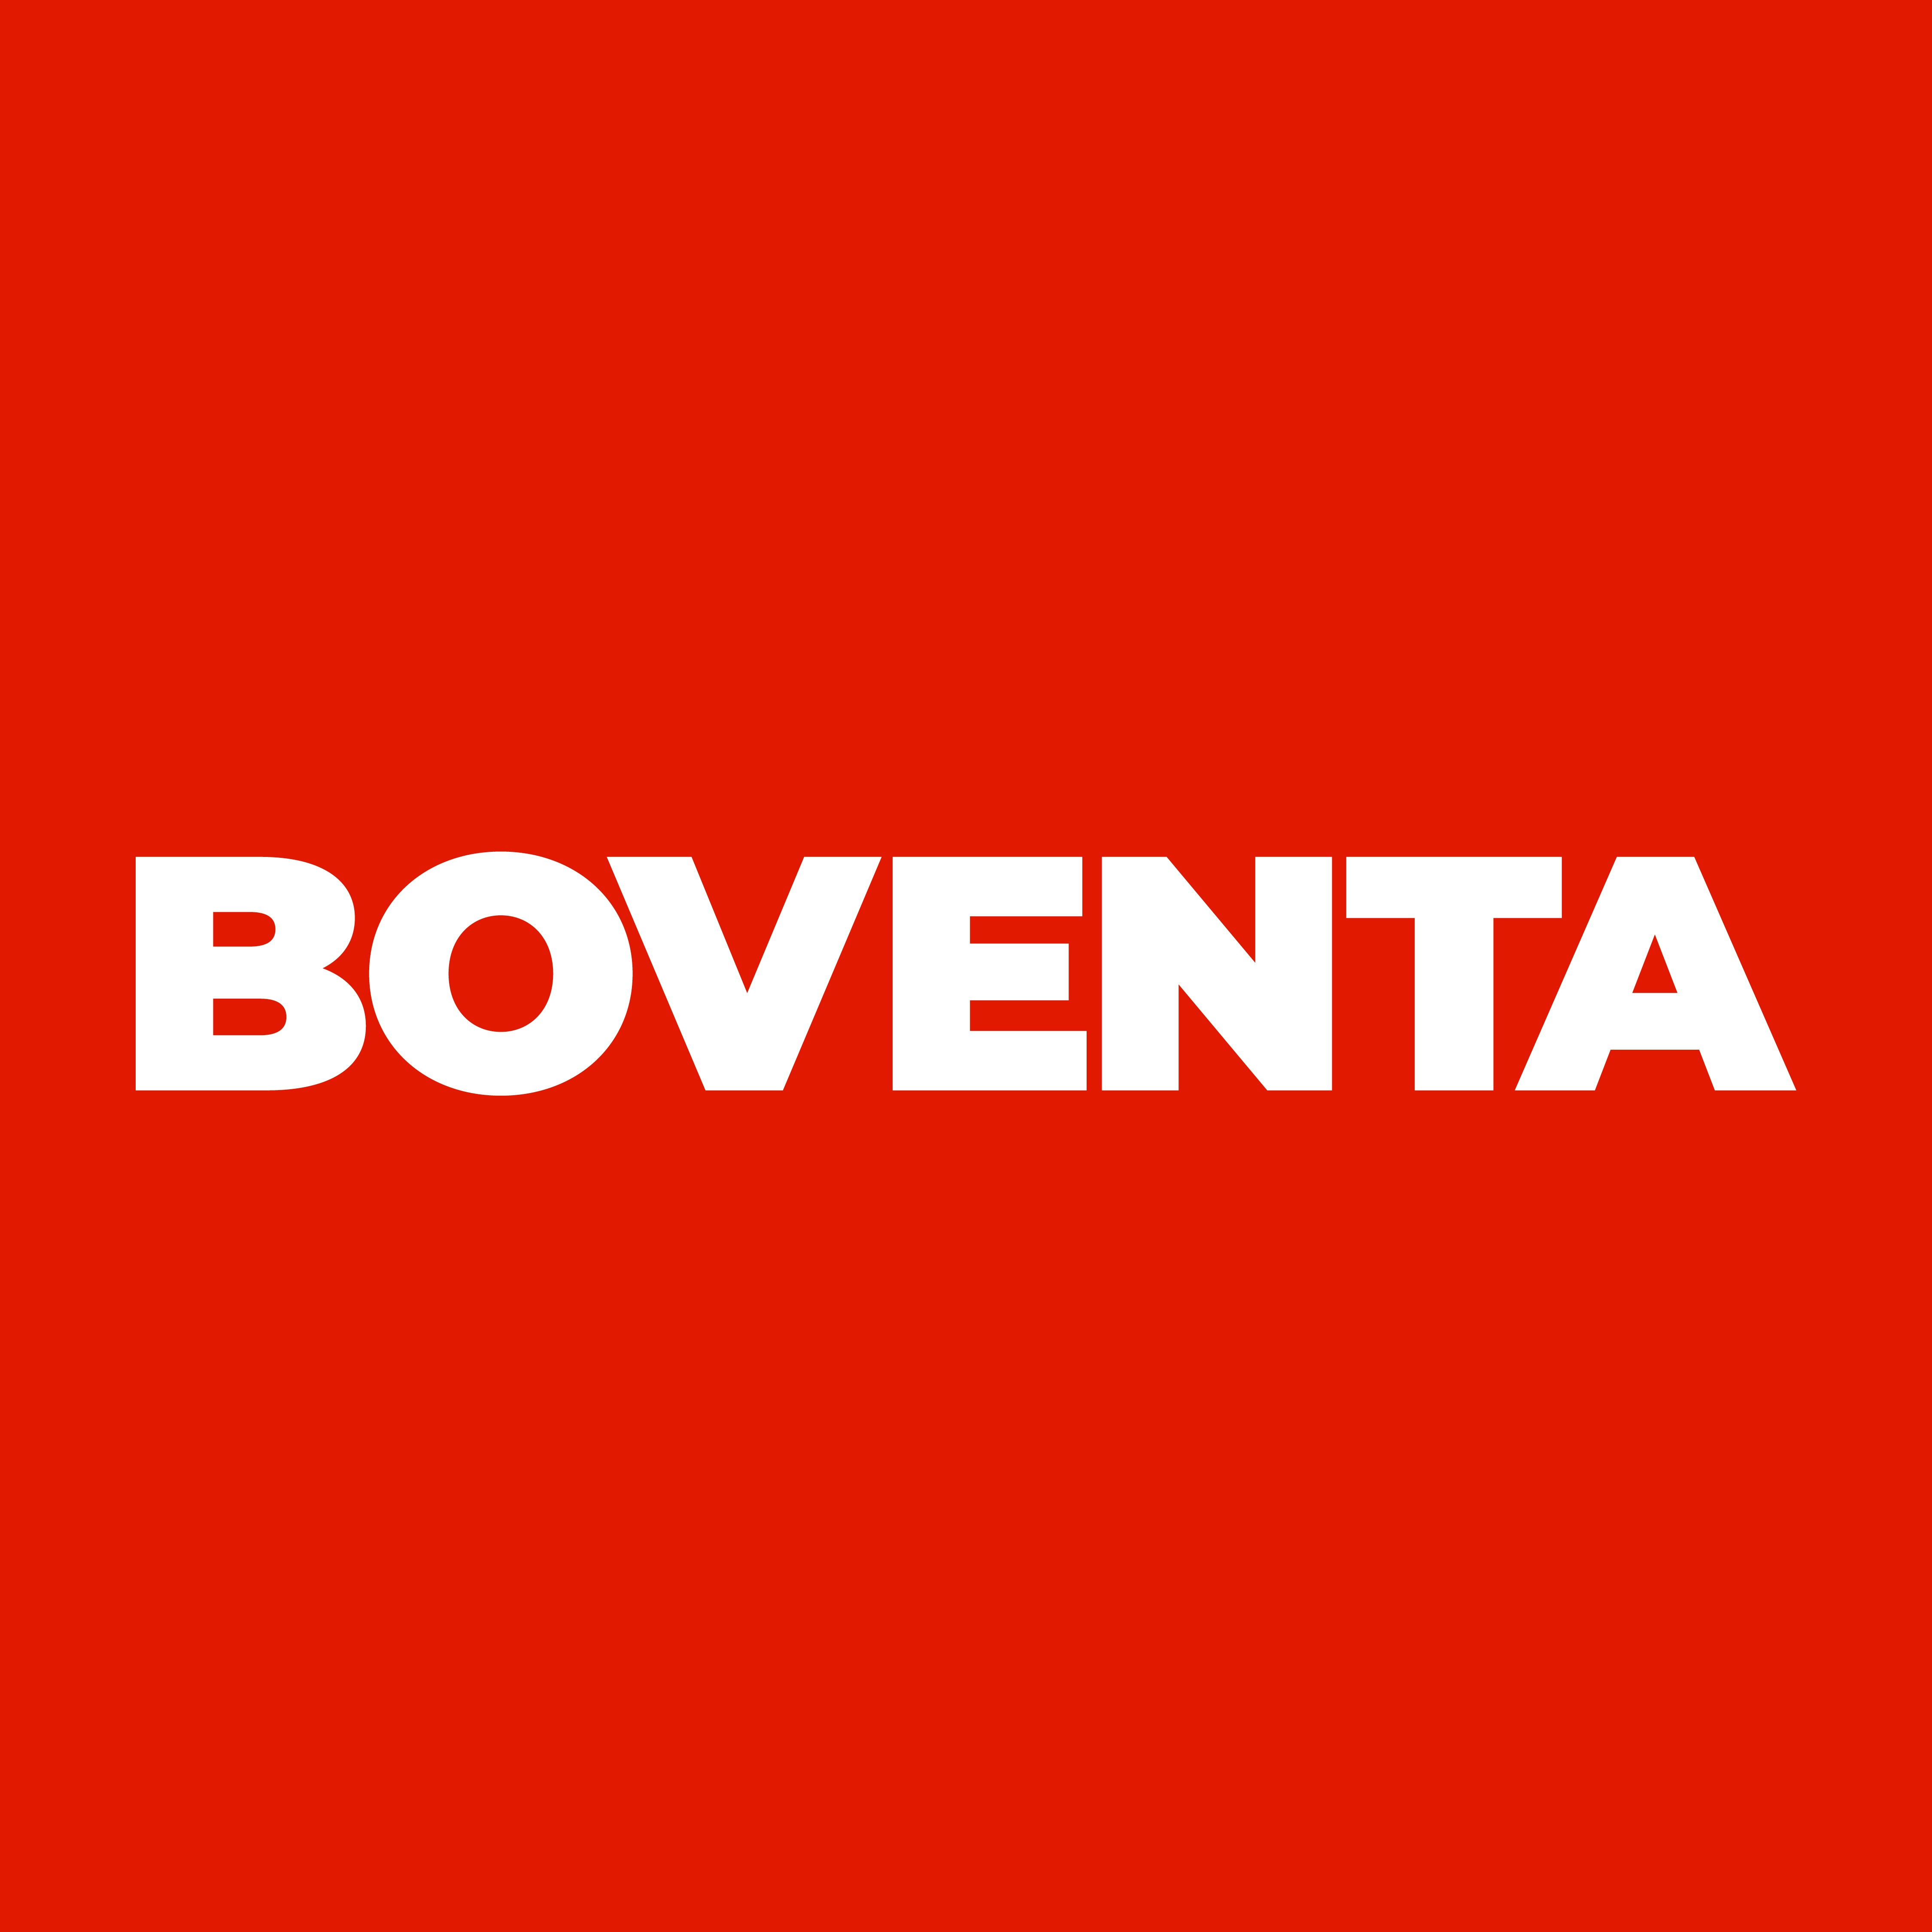 Boventa GmbH in Rosenfeld - Logo